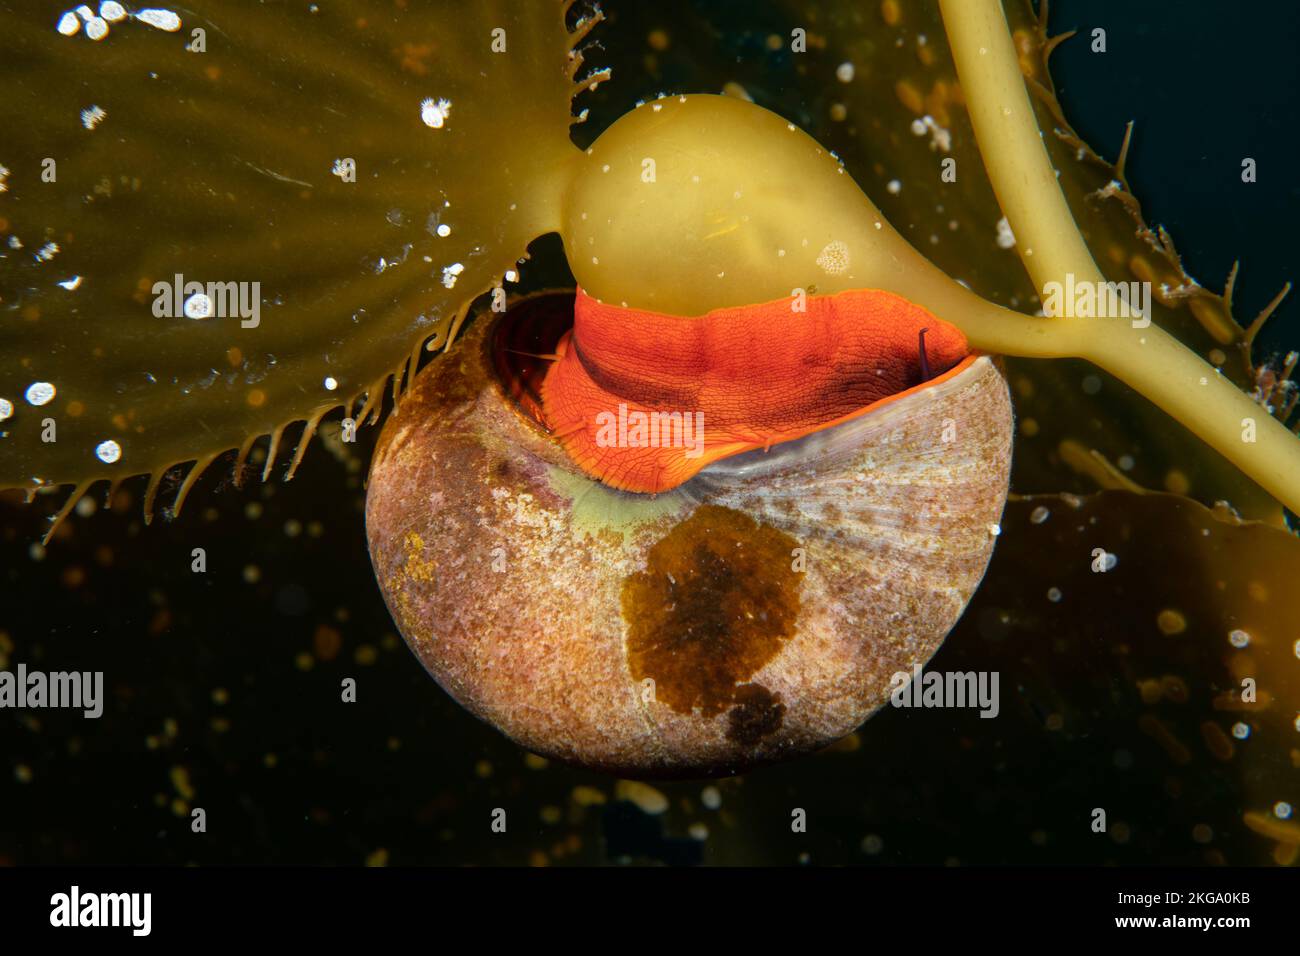 Un caracol norris superior, o caracol kelp, vive entre los lechos de kelp en Califiornia, alimentando y usando las algas para la protección de los depredadores. Foto de stock